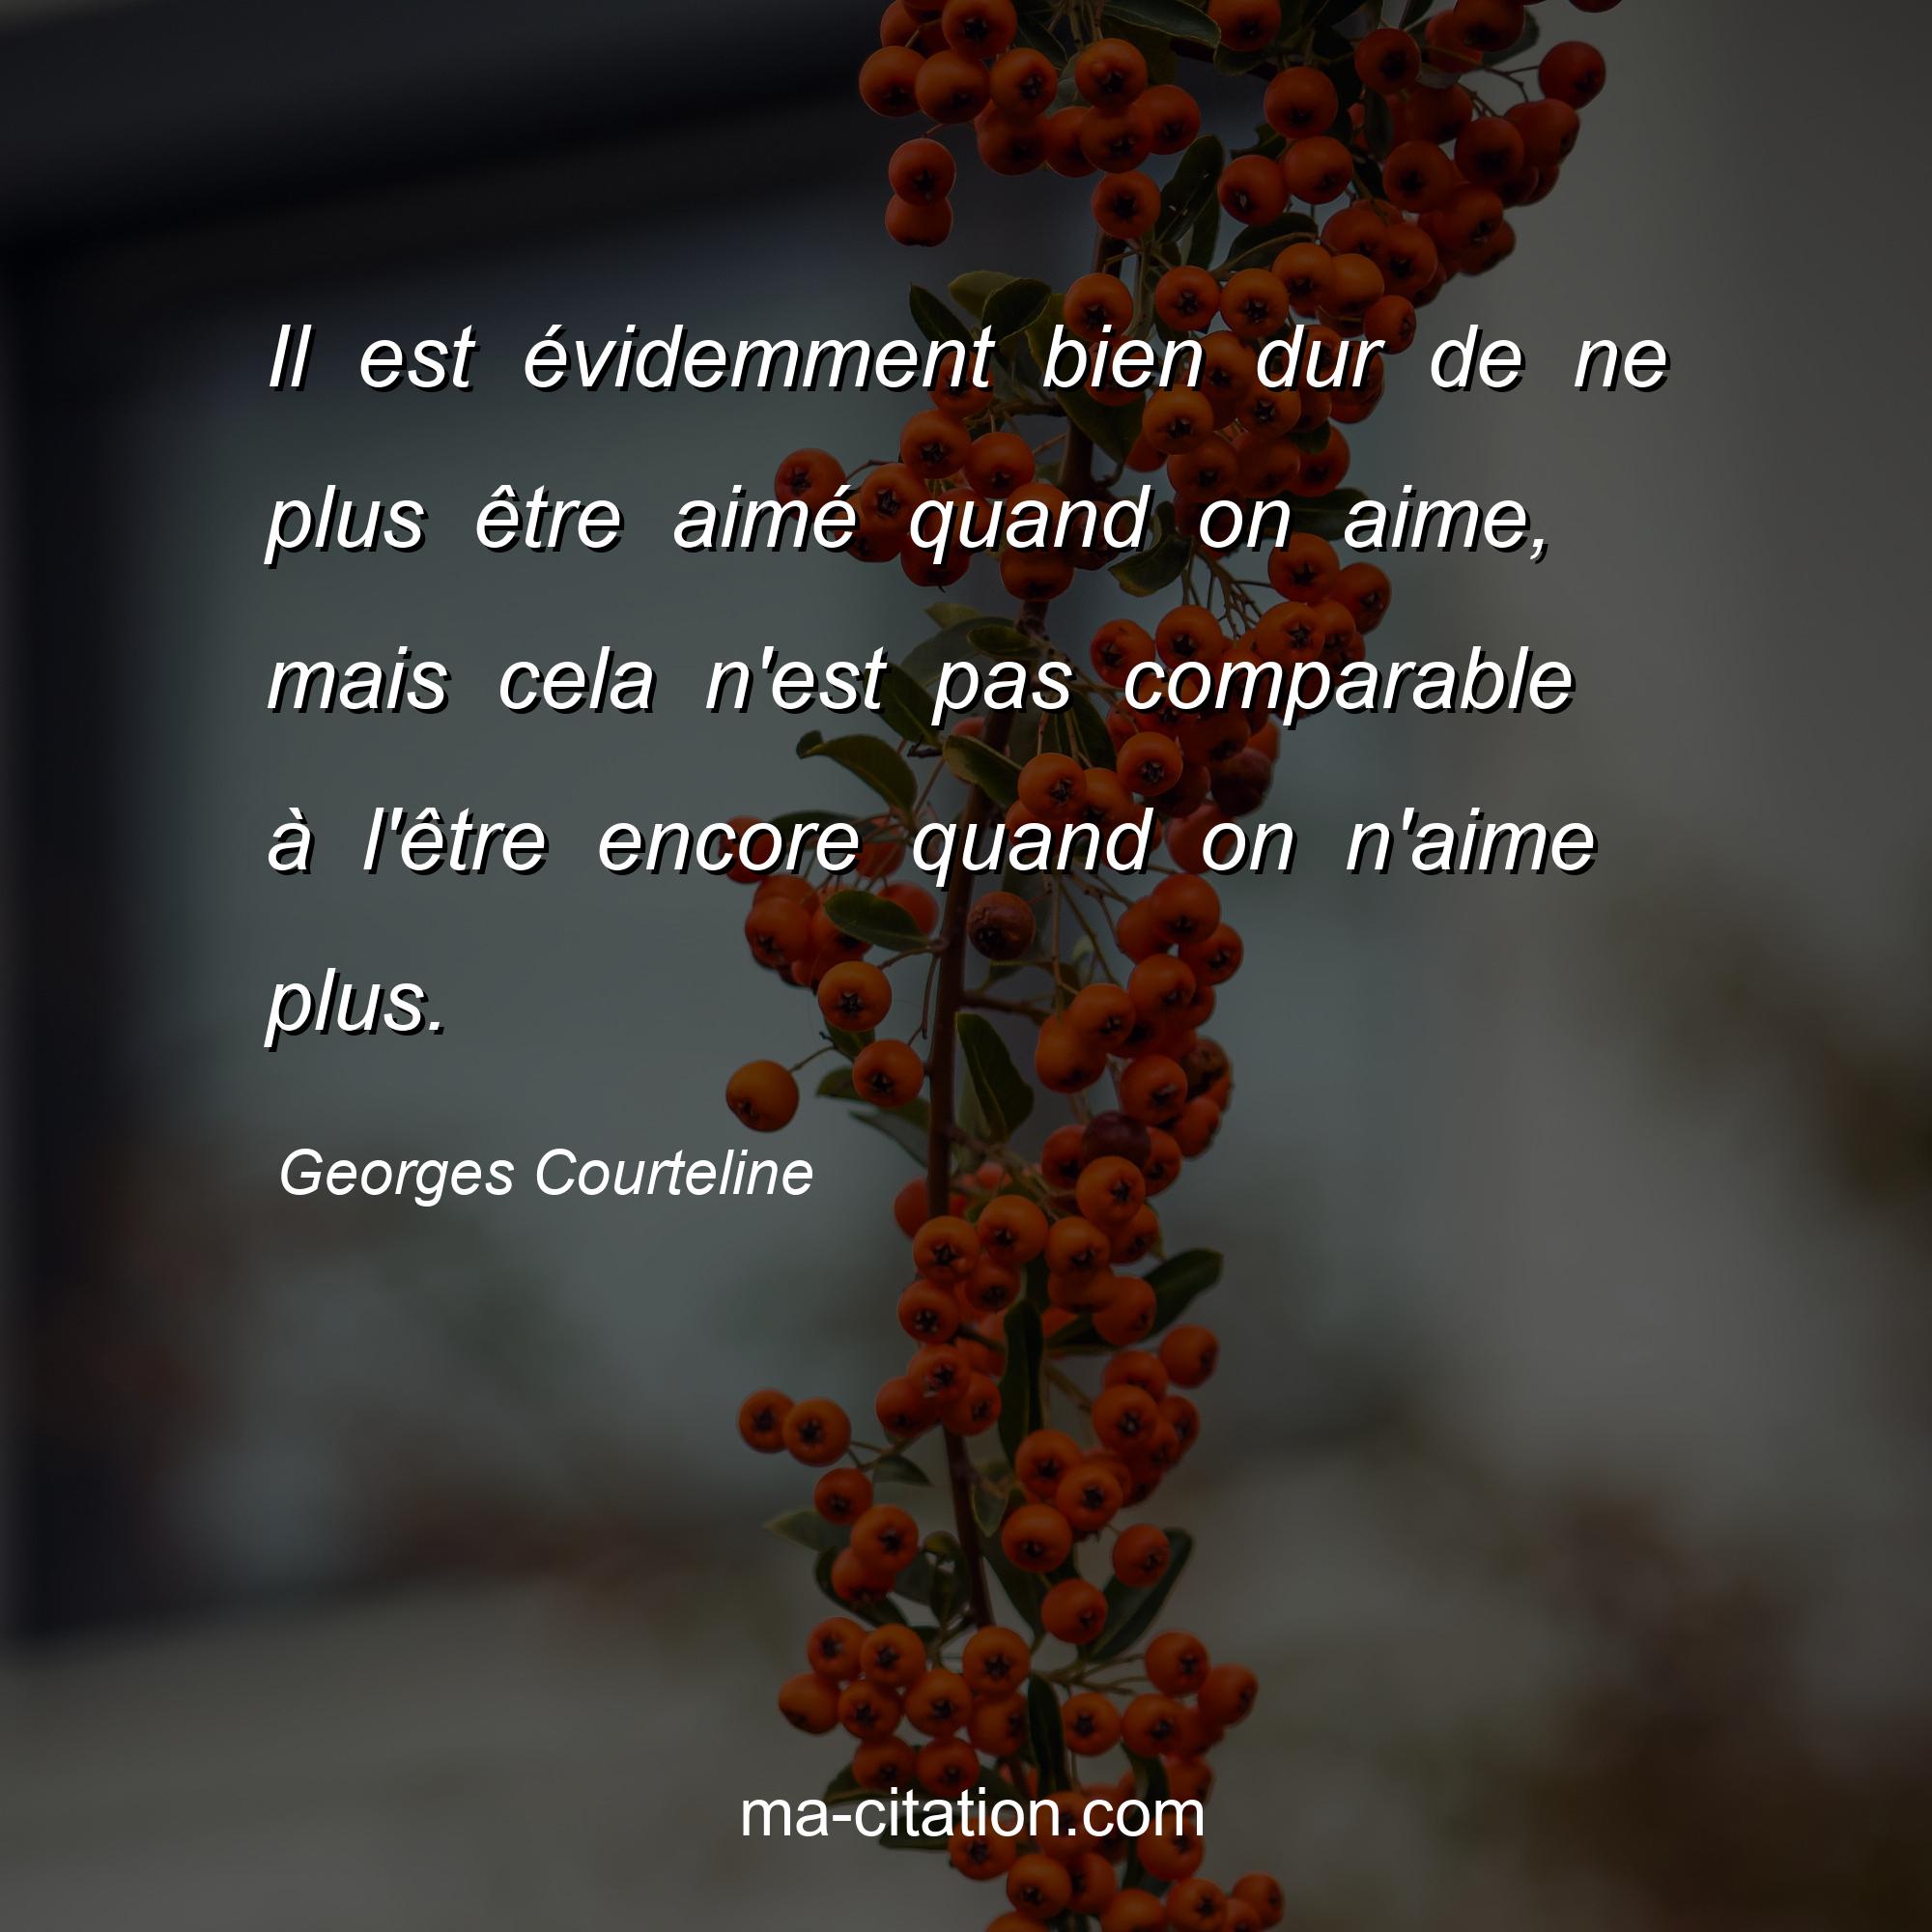 Georges Courteline : Il est évidemment bien dur de ne plus être aimé quand on aime, mais cela n'est pas comparable à l'être encore quand on n'aime plus.